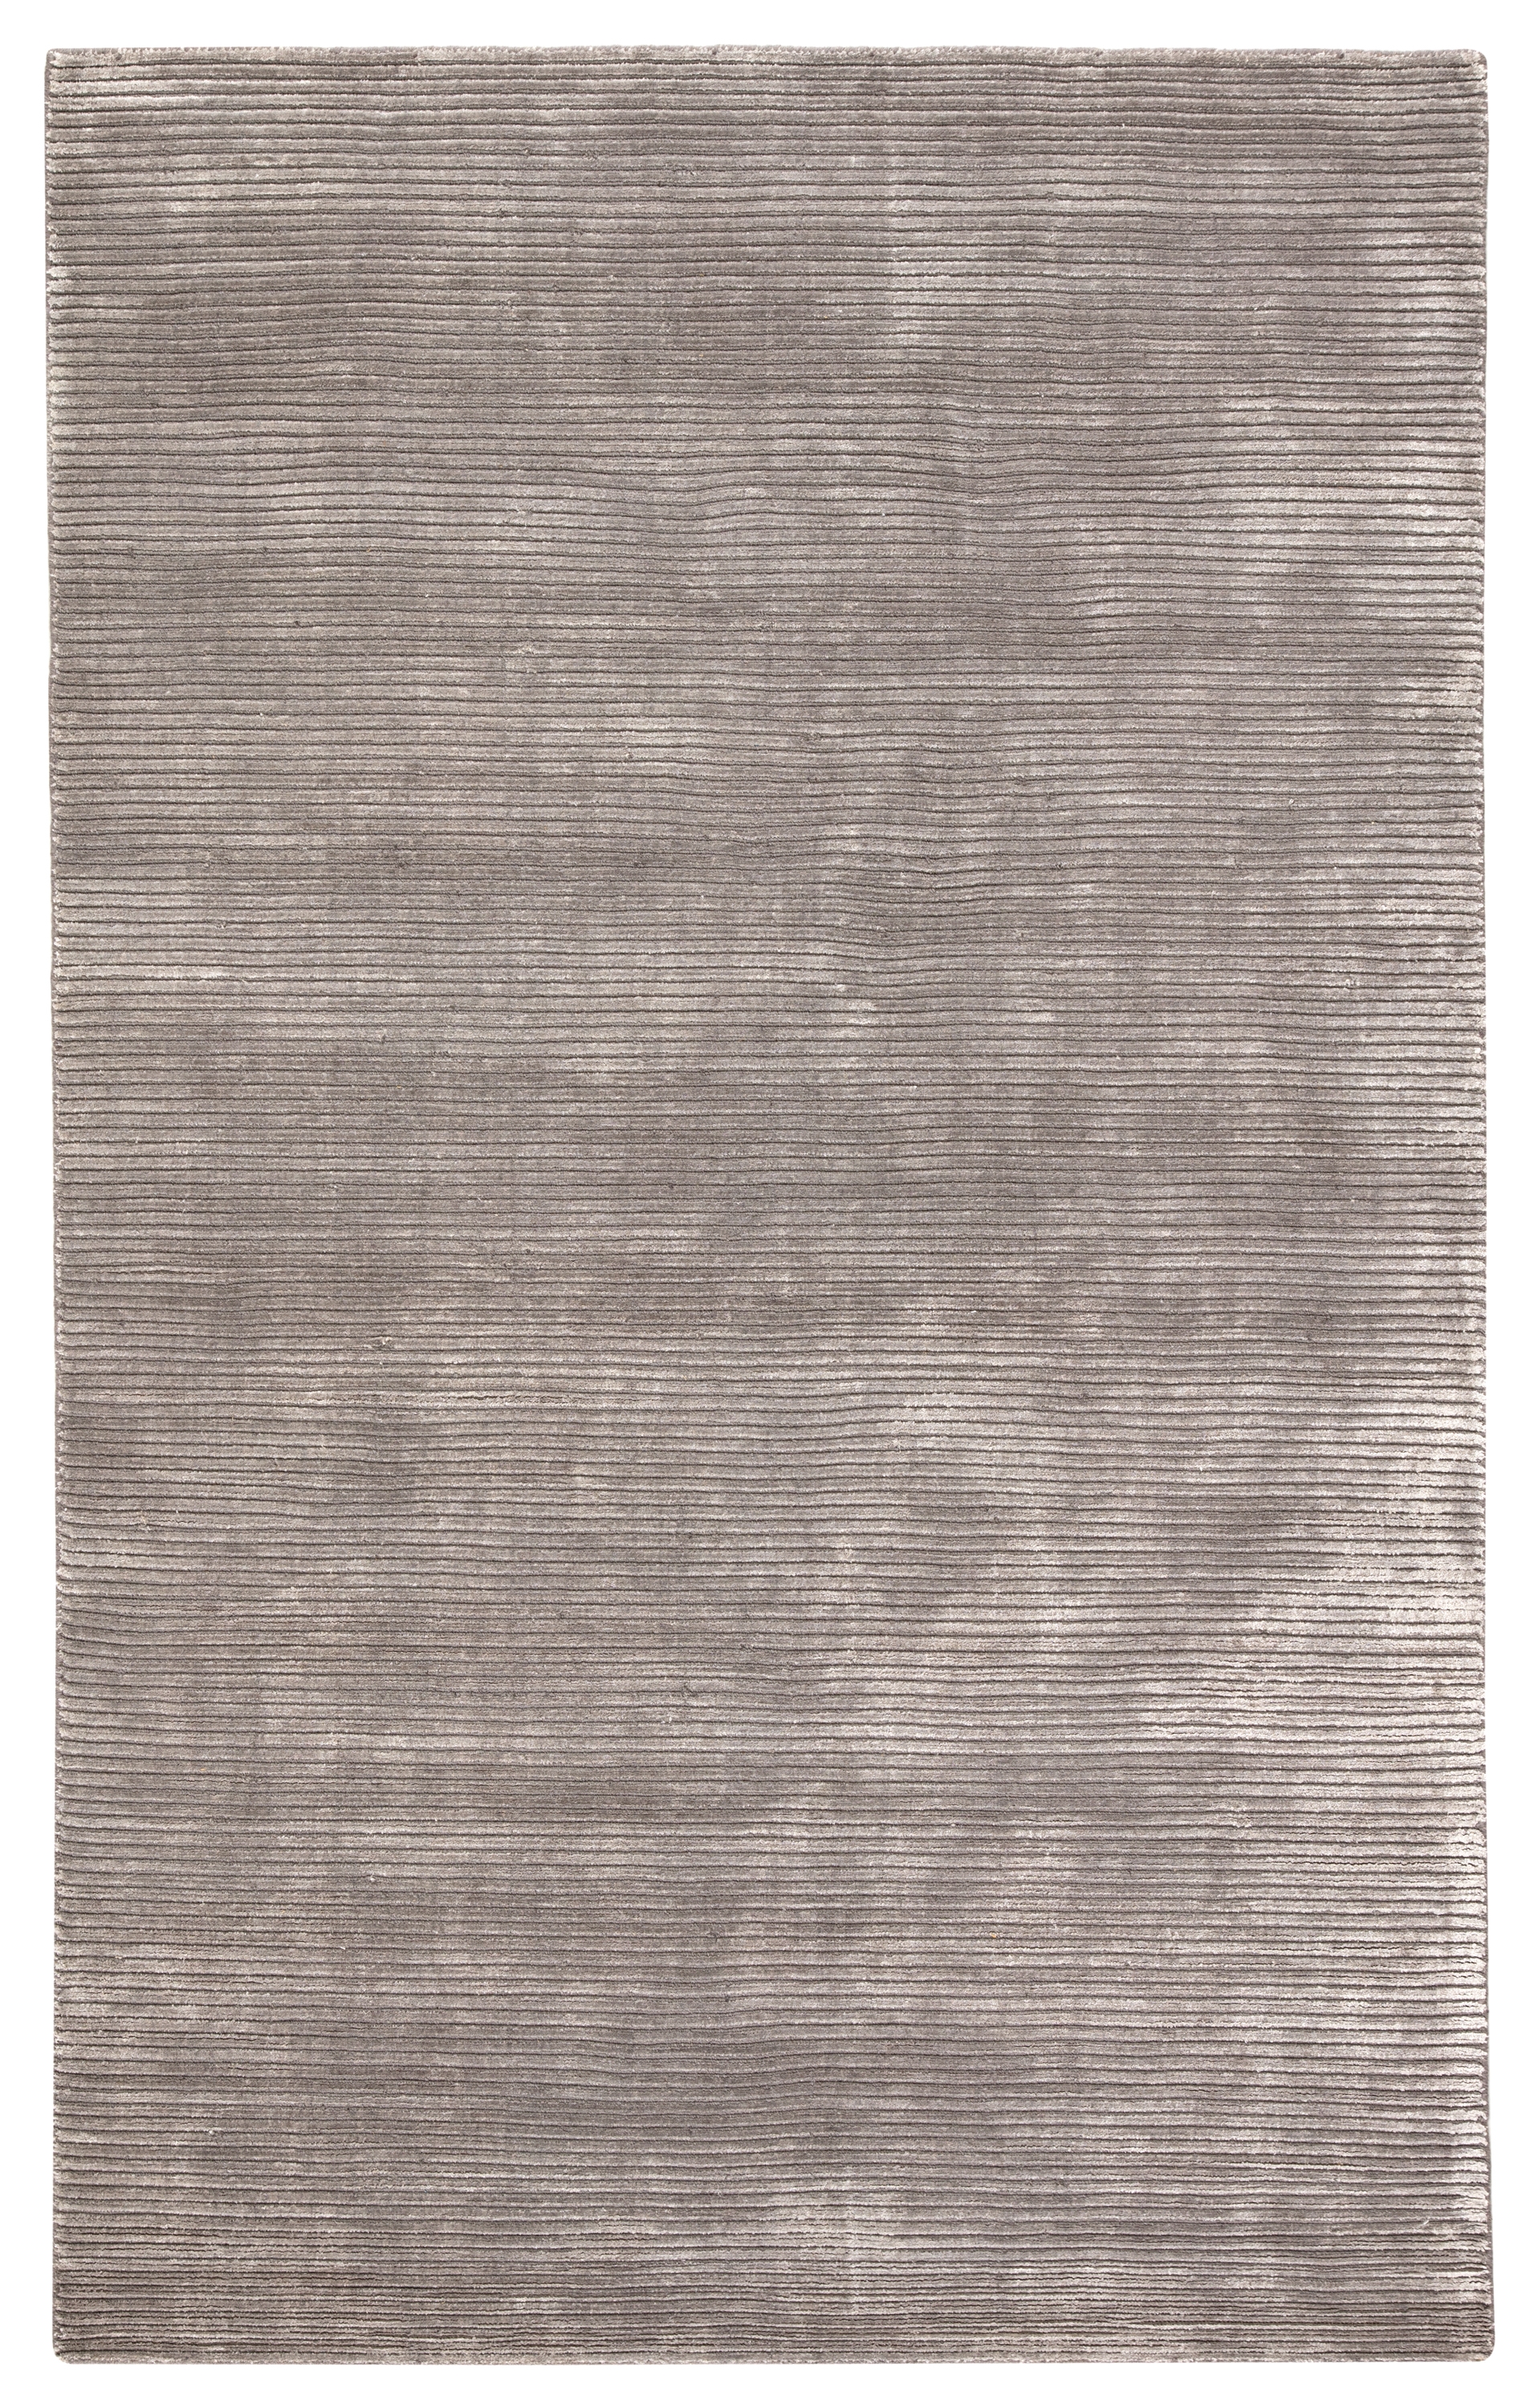 Basis Handmade Solid Gray/ Silver Area Rug (9' X 12') - Image 0